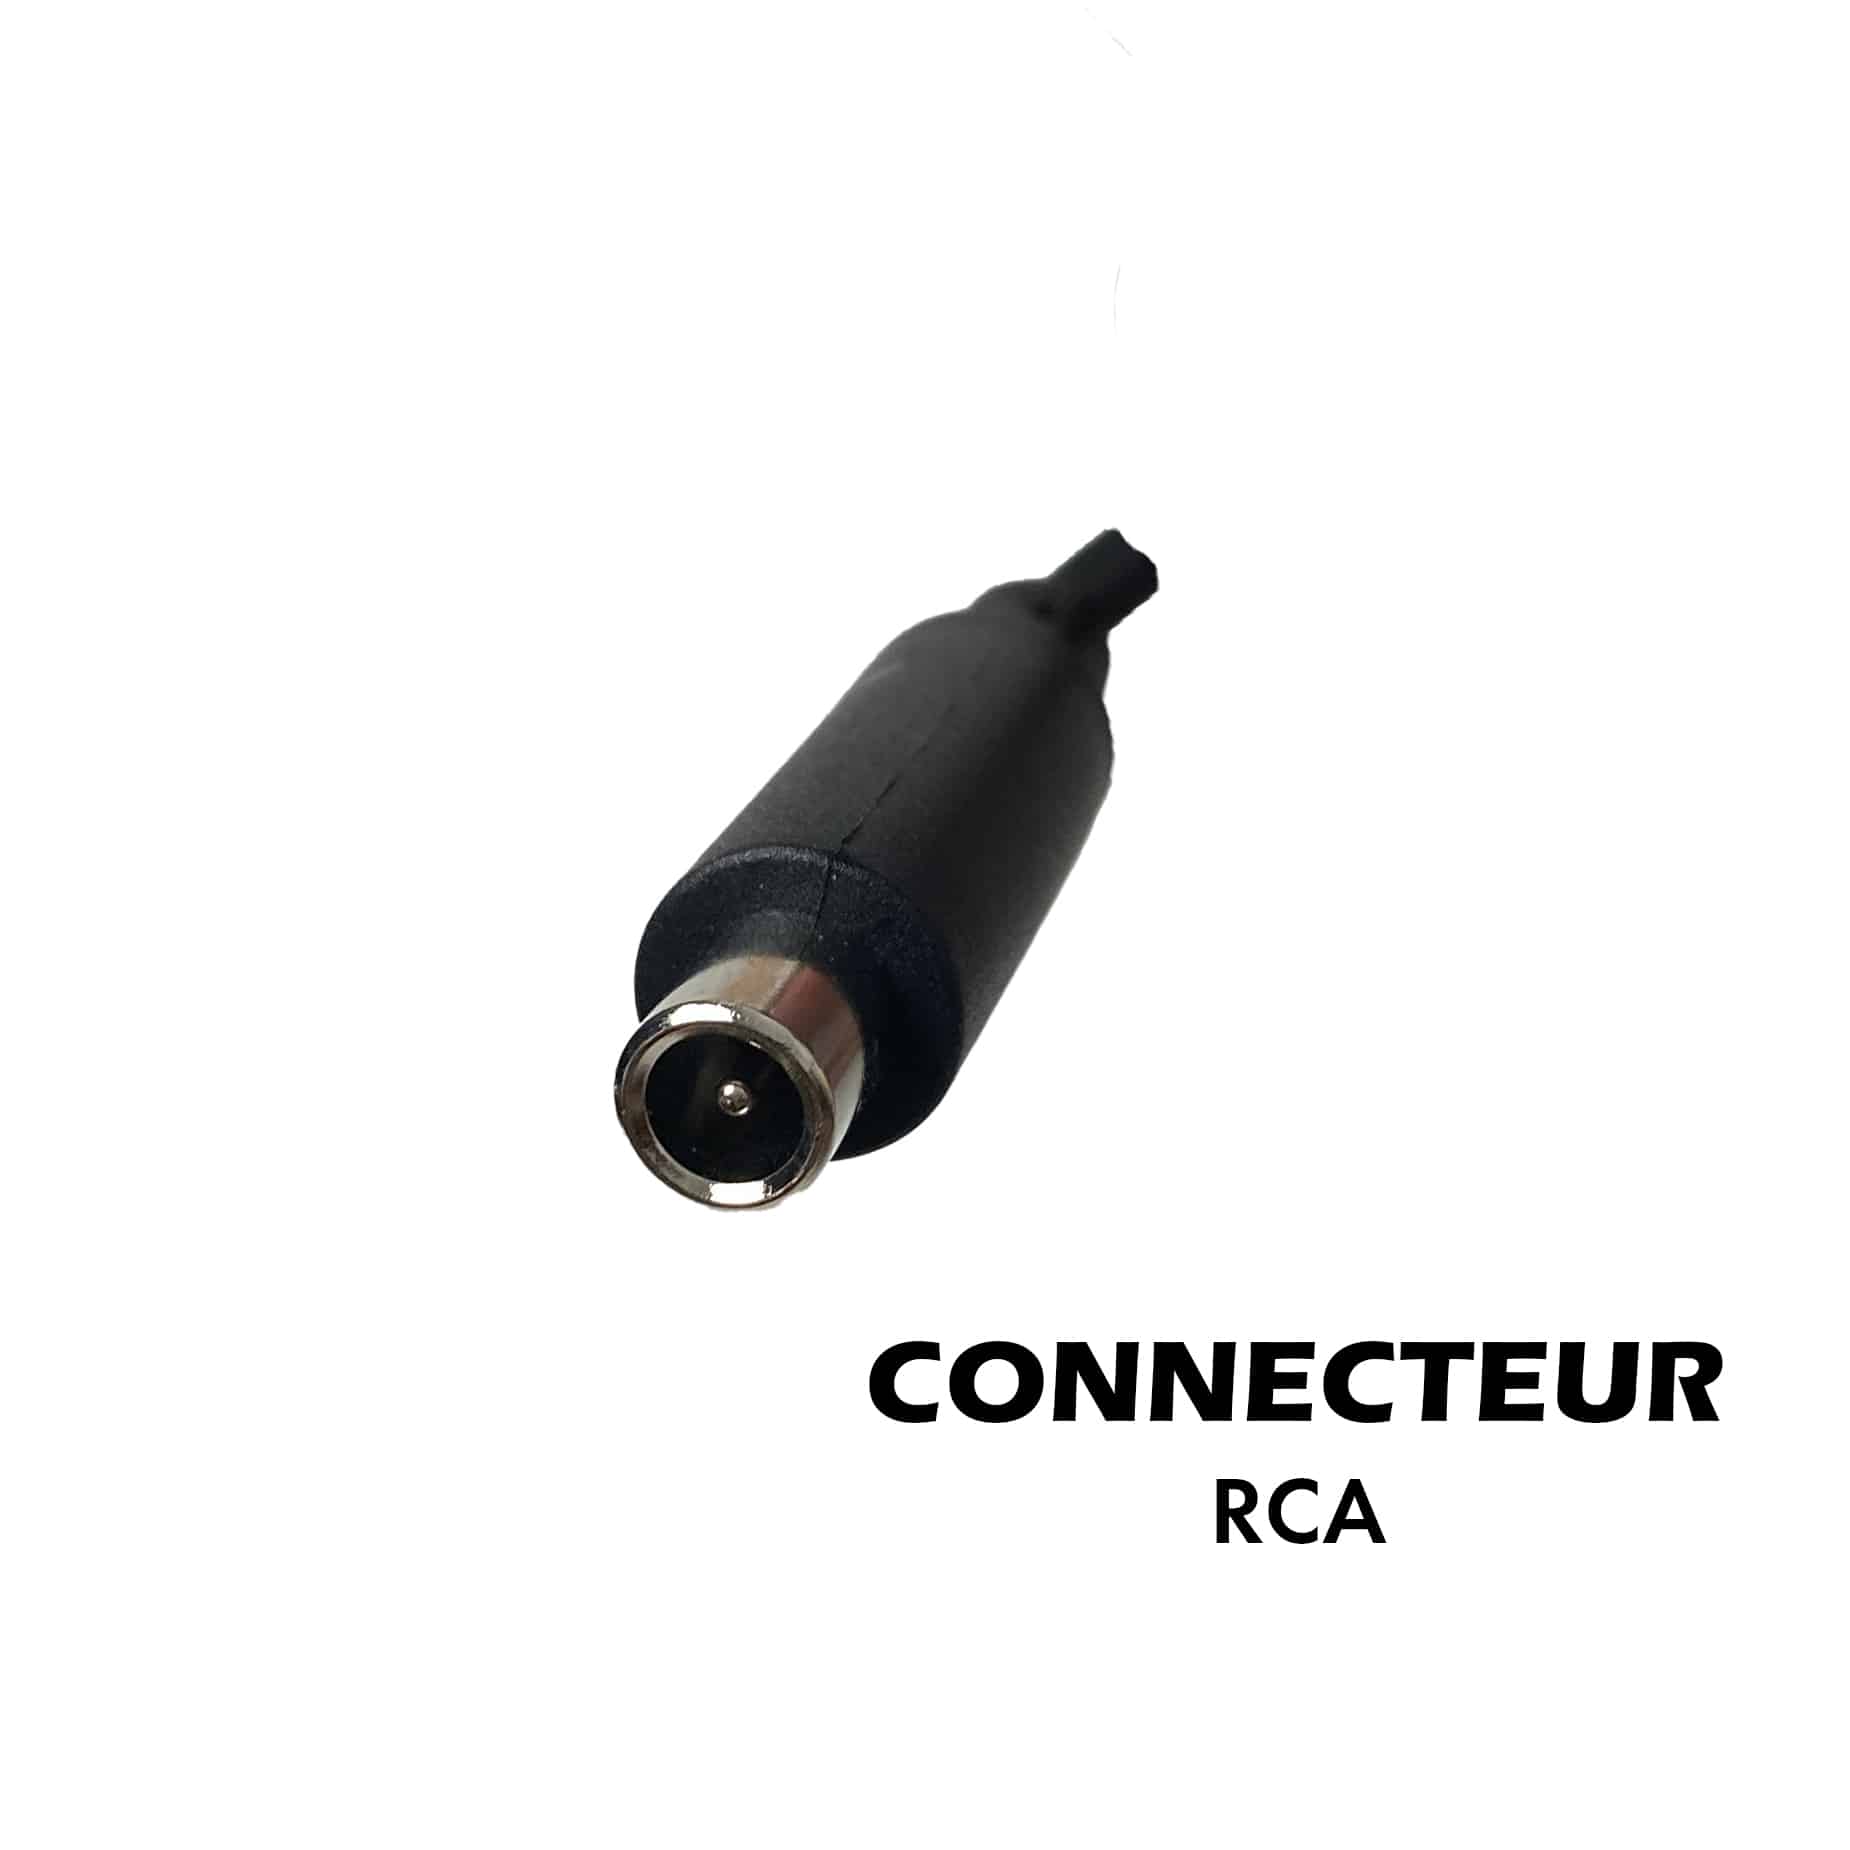 Chargeur 42V / 2A (connecteur RCA)